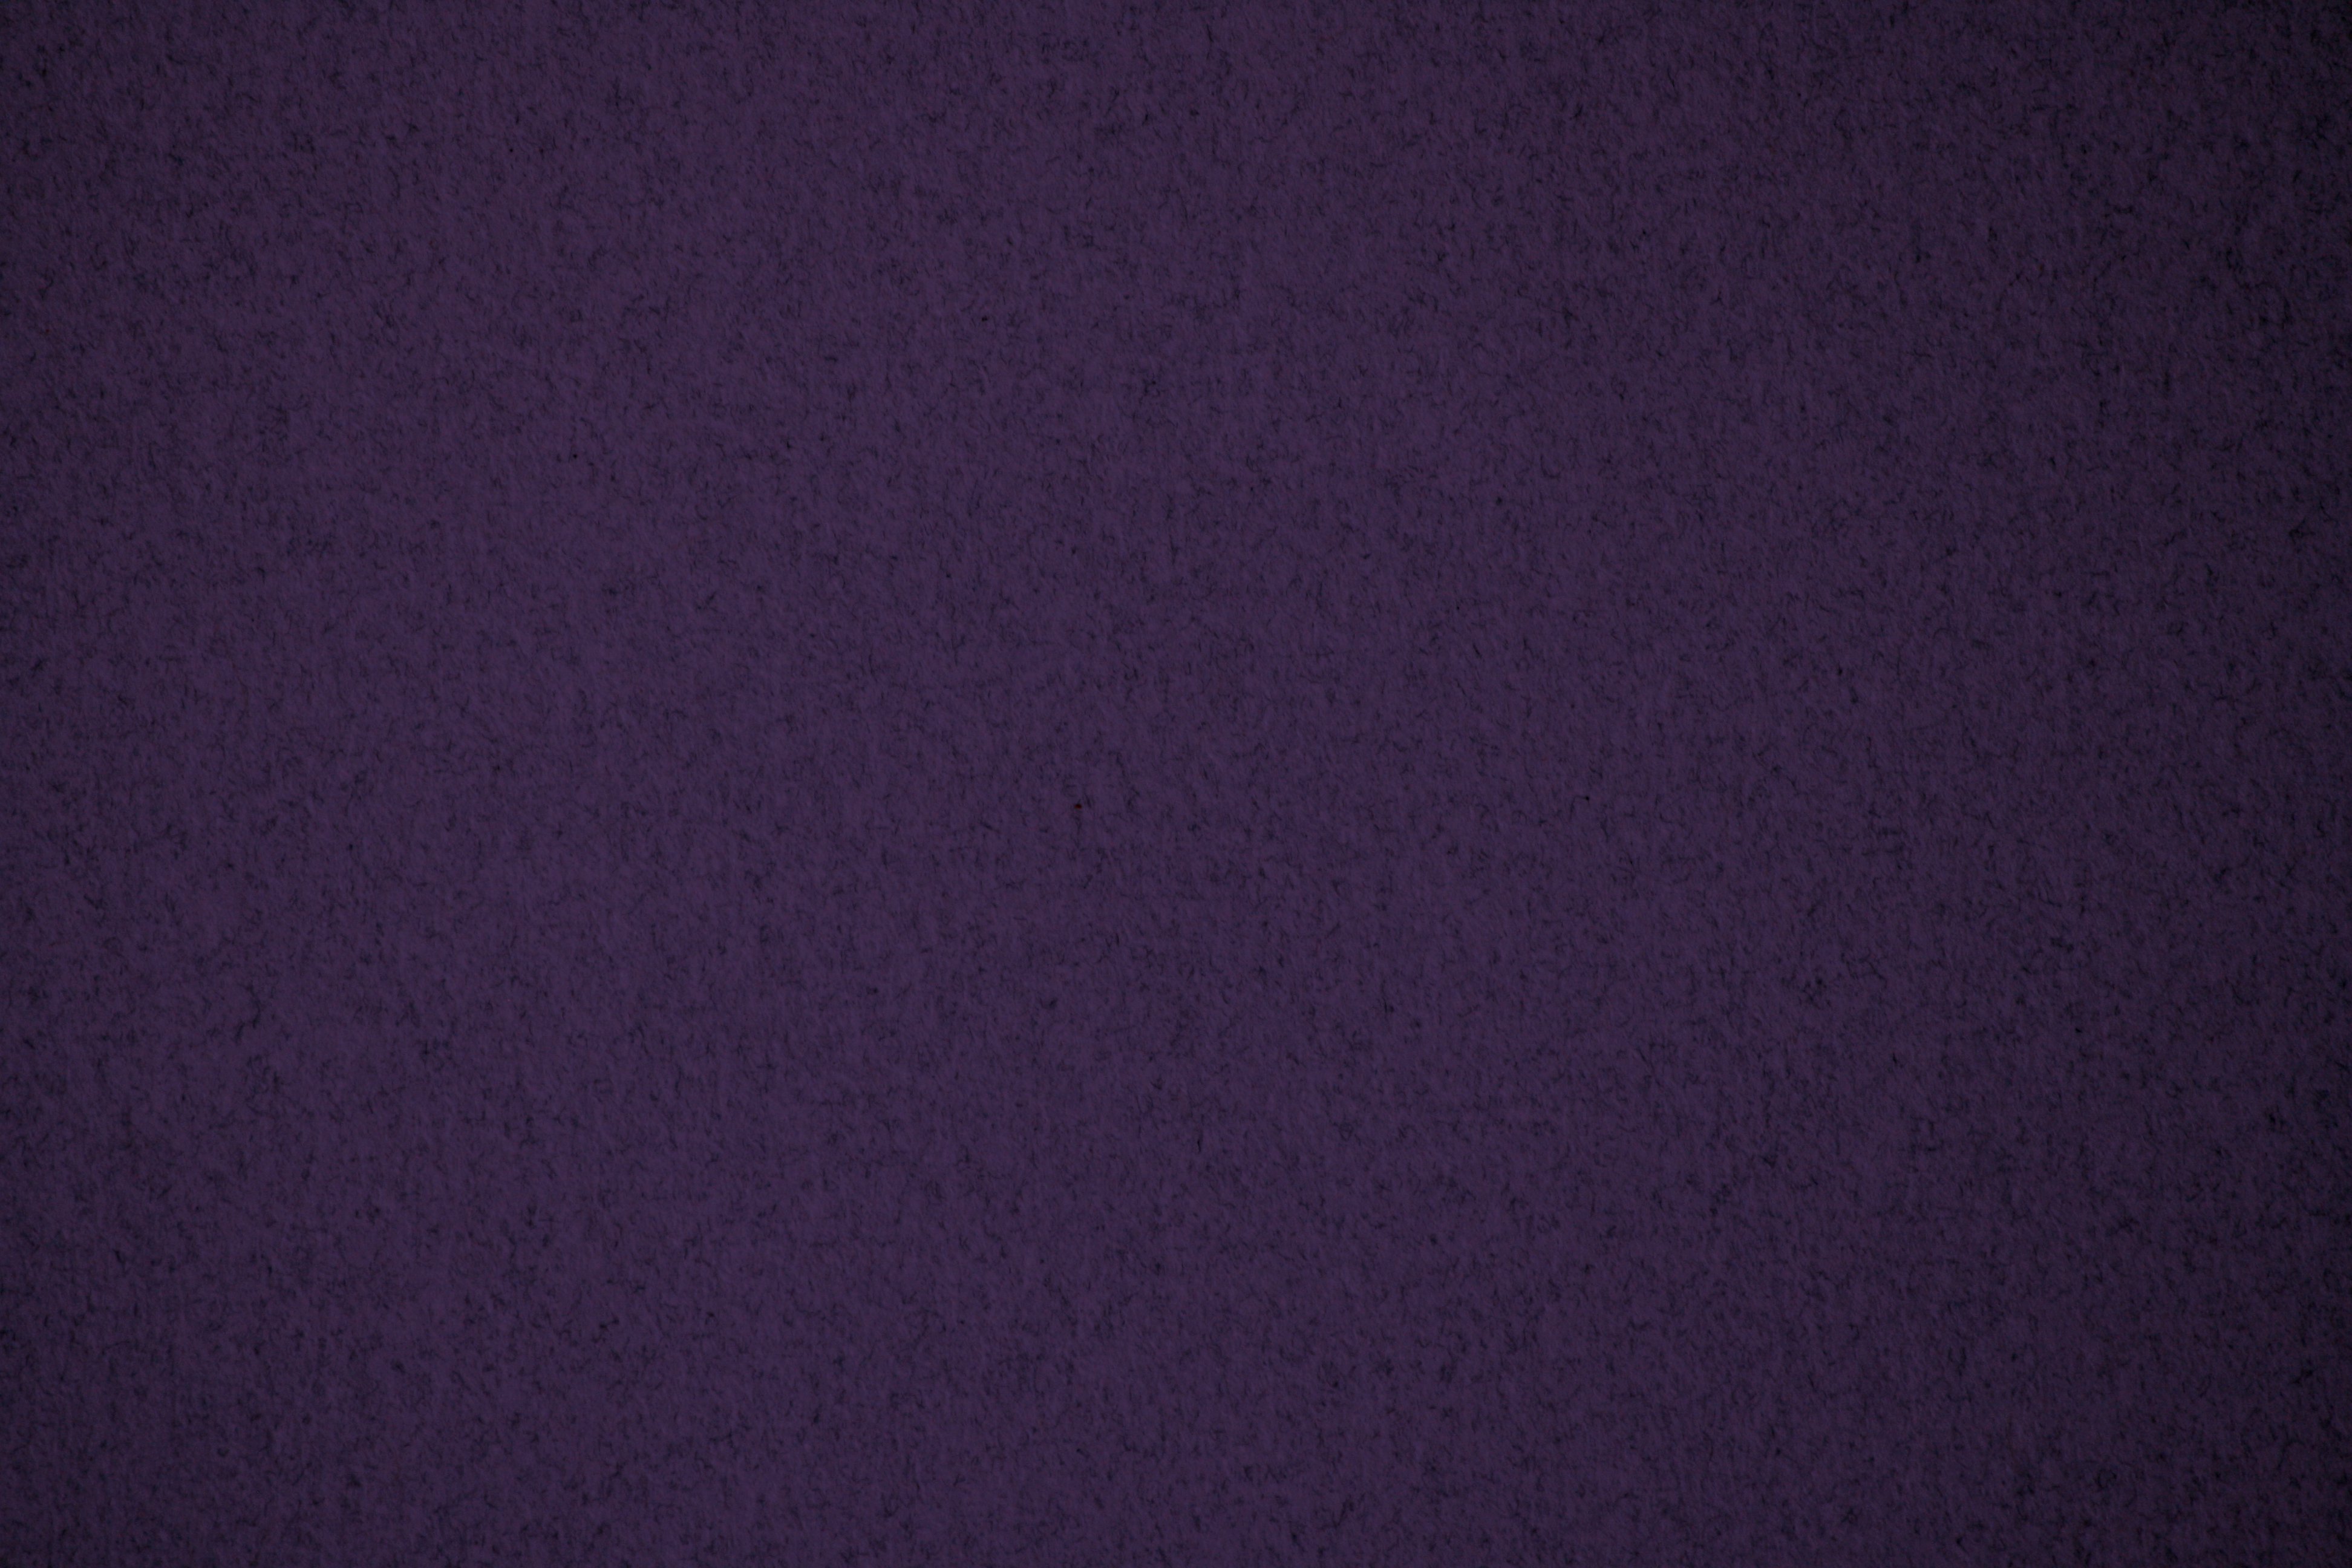 Dark Solid Purple Wallpaper - Wallpapersafari